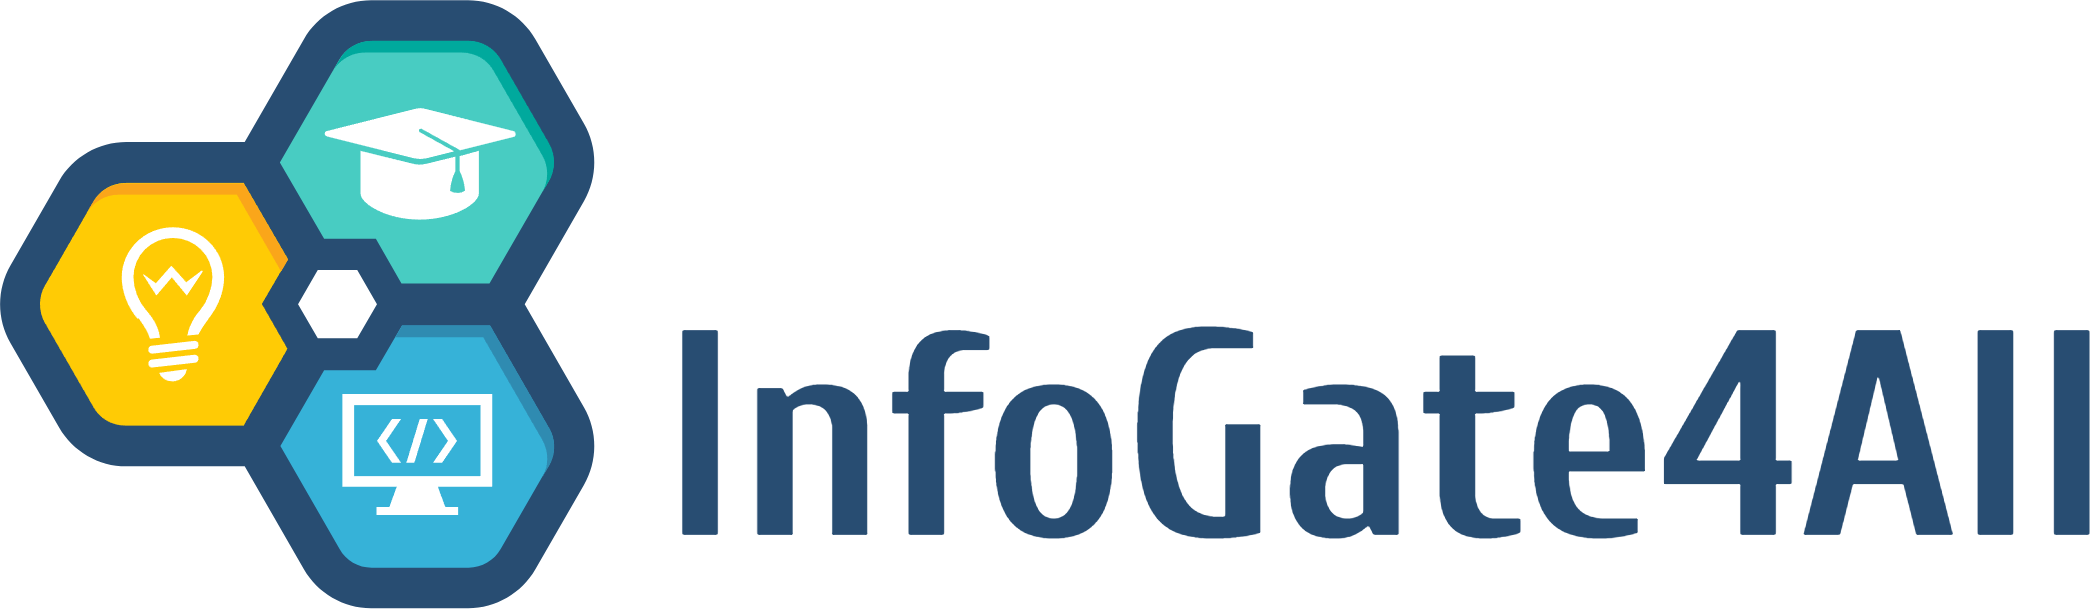 infogate4all logo